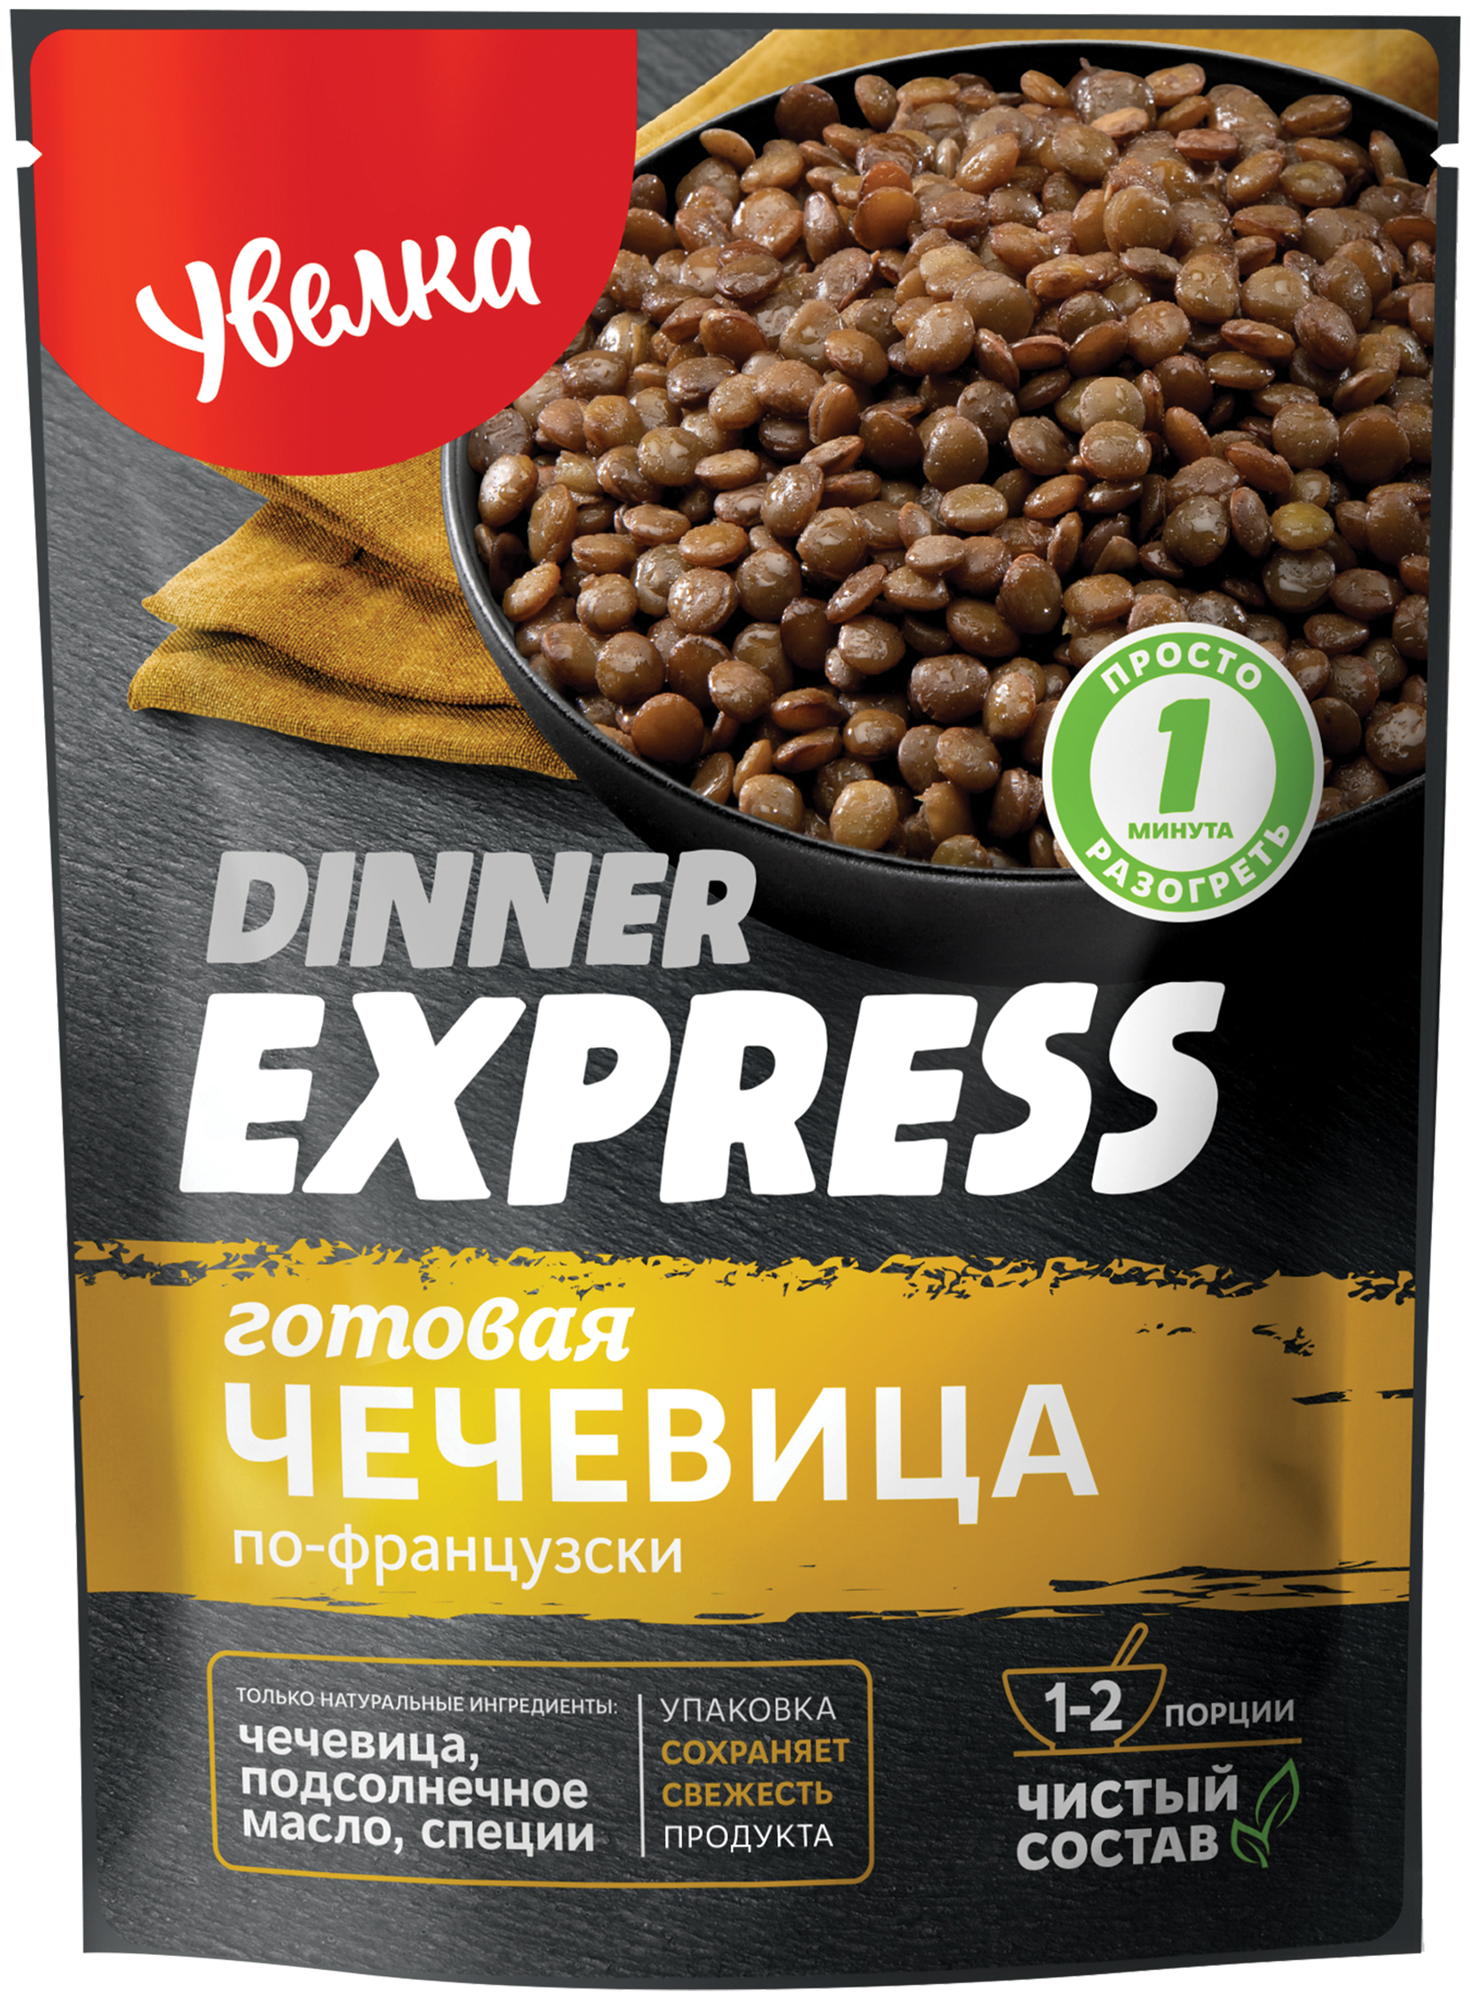 Готовая чечевица по-французски Увелка Dinner Express, 250 г — купить по выгодной цене на Яндекс.Маркете